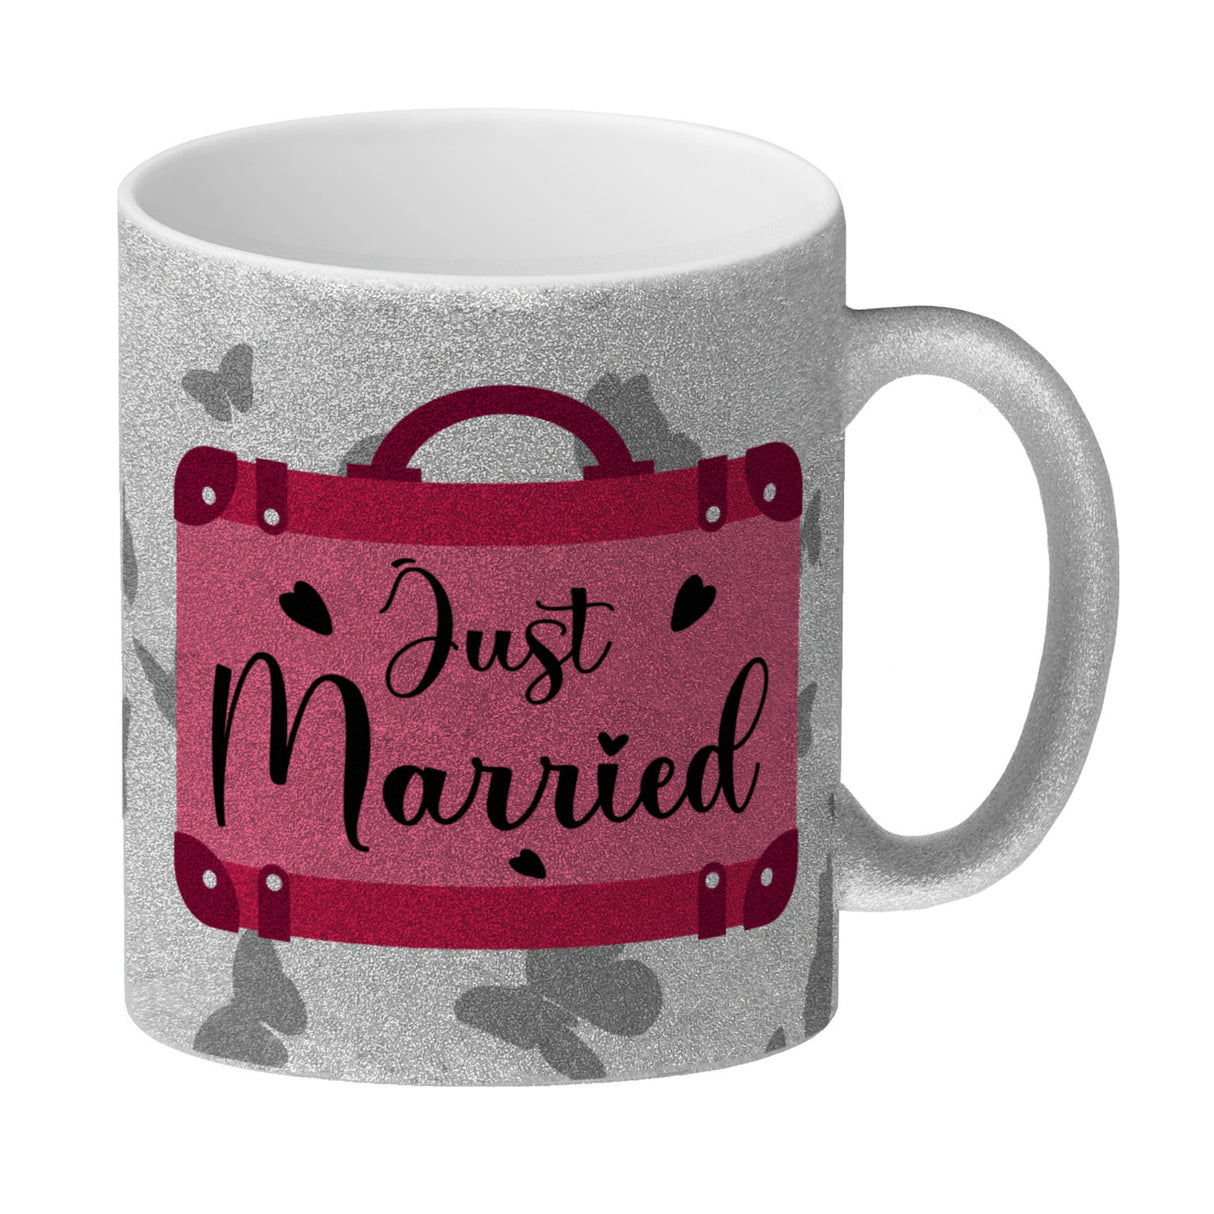 Just married Hochzeit Kaffeebecher mit pinkem Koffer